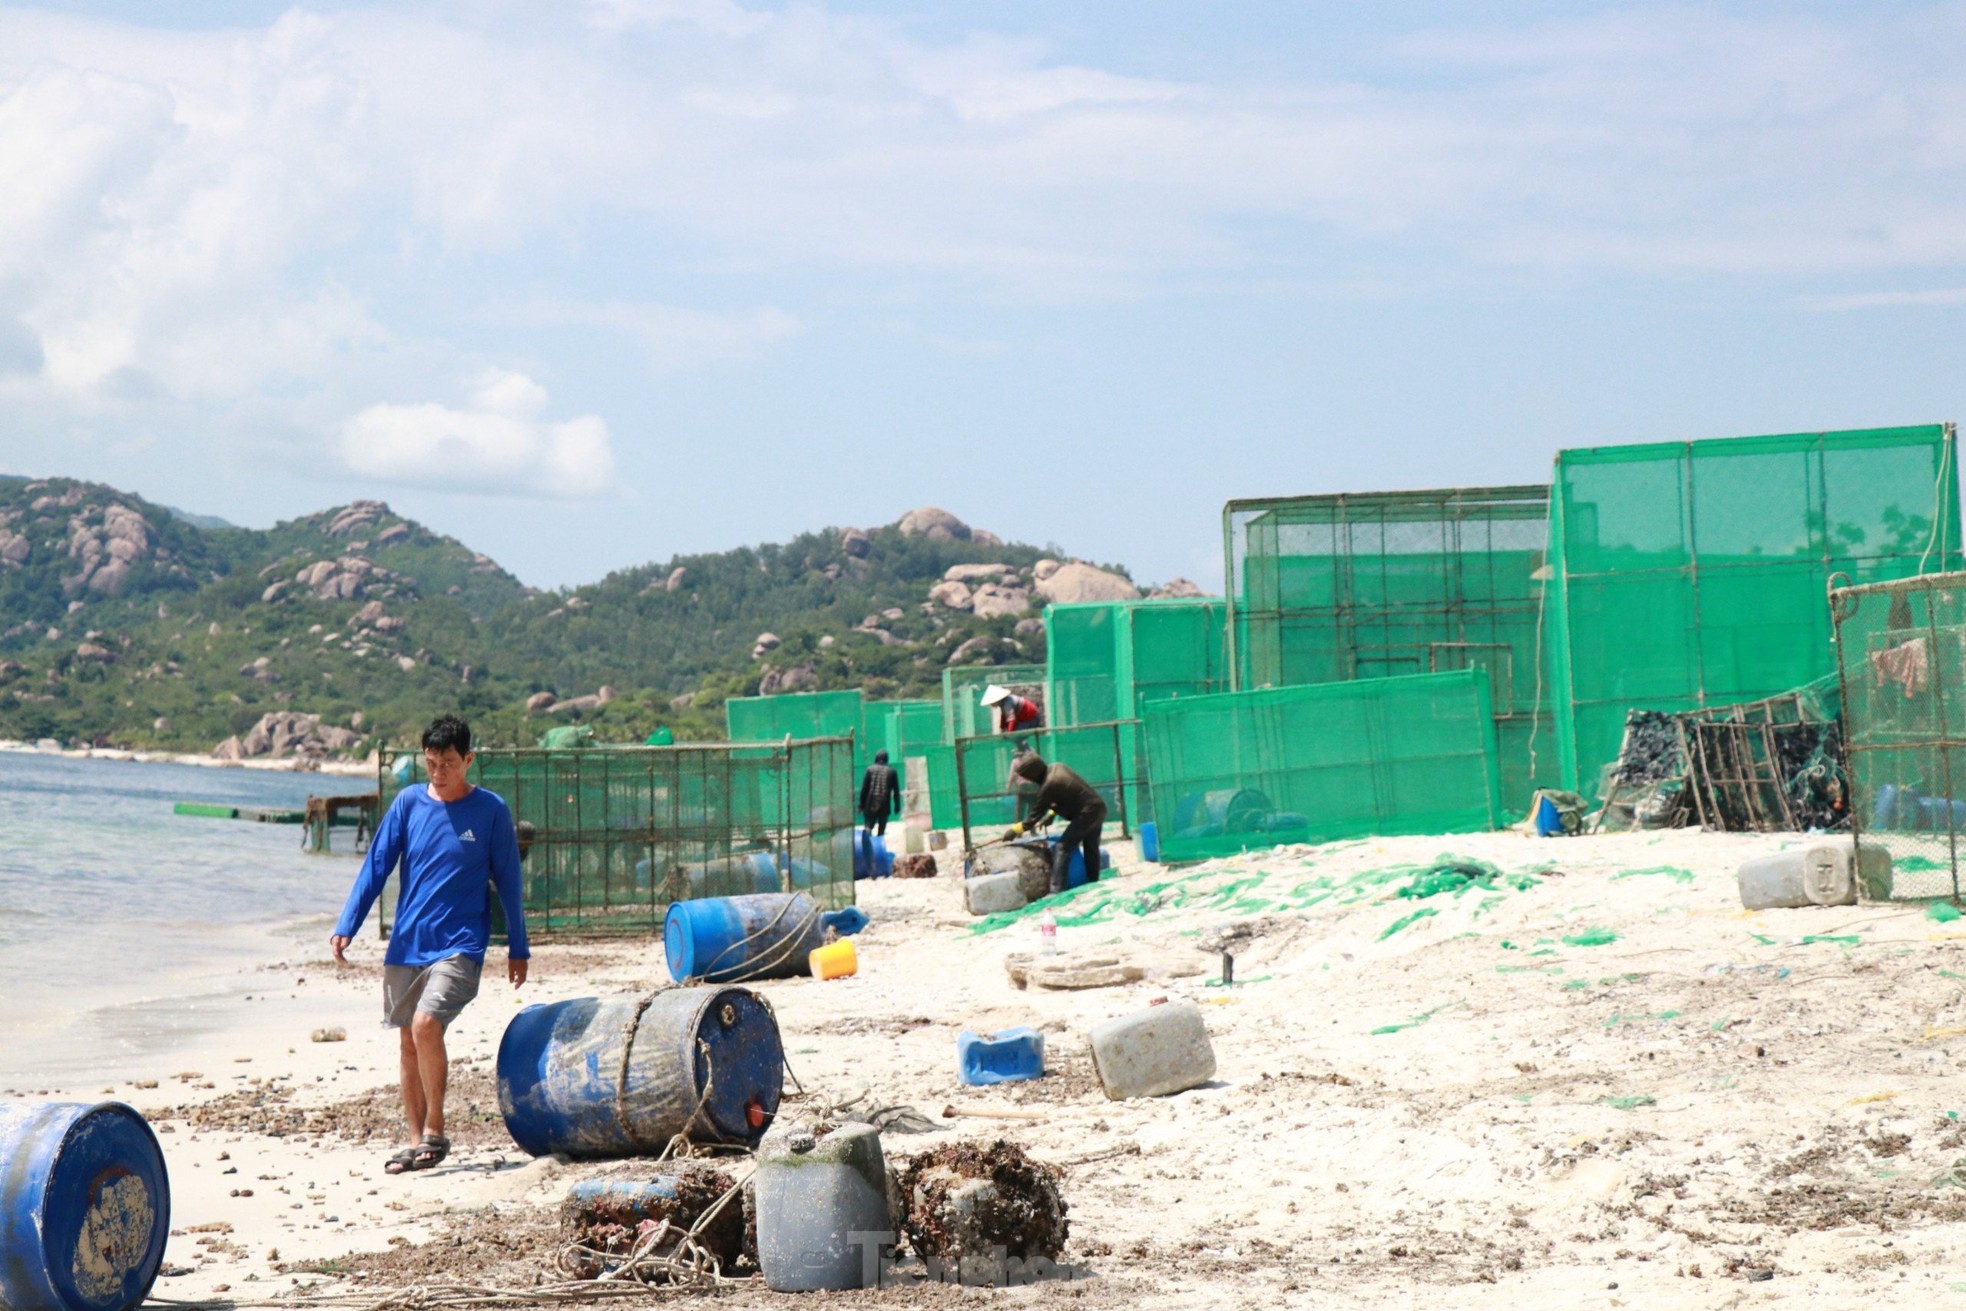 Bãi biển đẹp như Maldives ở vịnh Cam Ranh bị 'nghĩa địa rác' tàn phá - Ảnh 12.